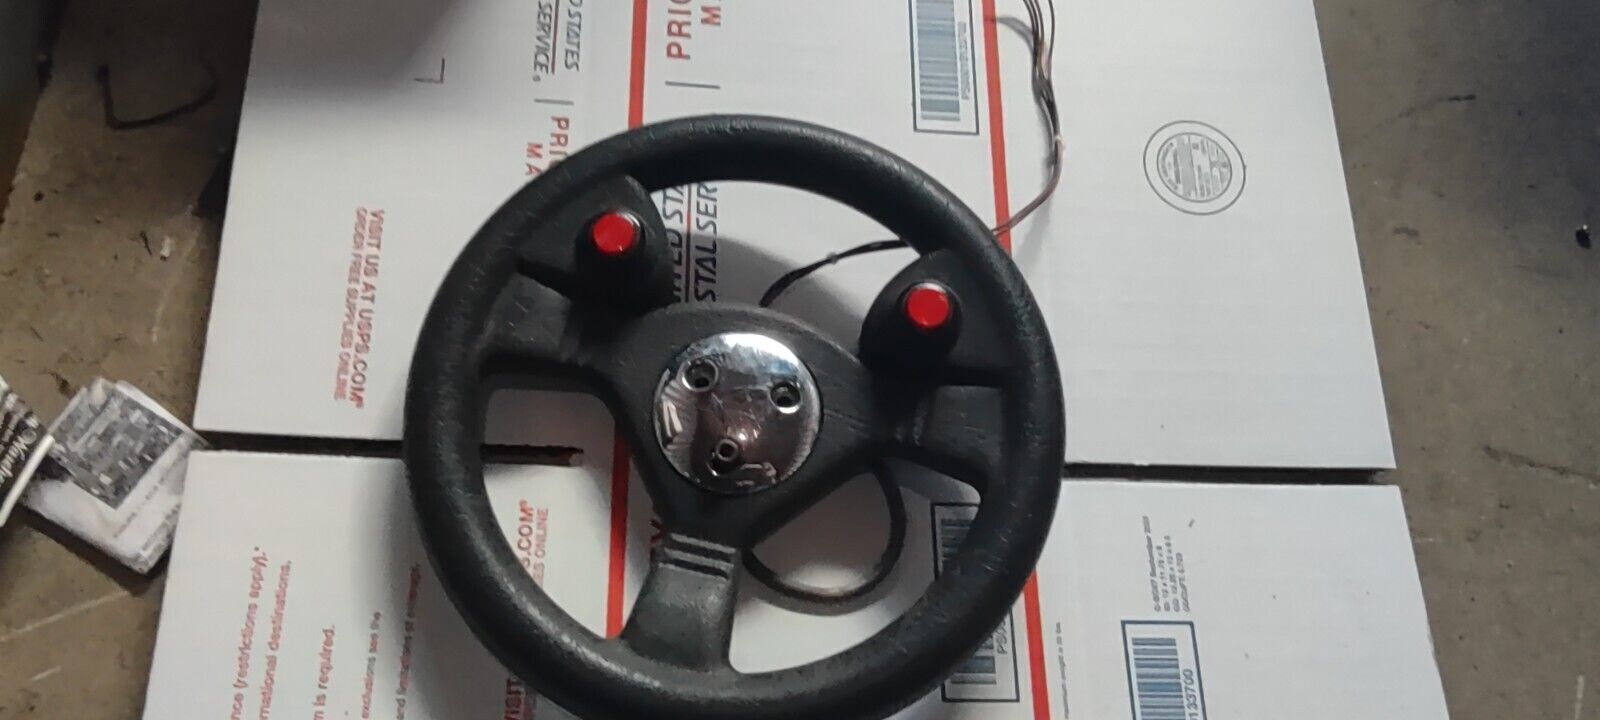 revolt arcade fire button steering wheel #26